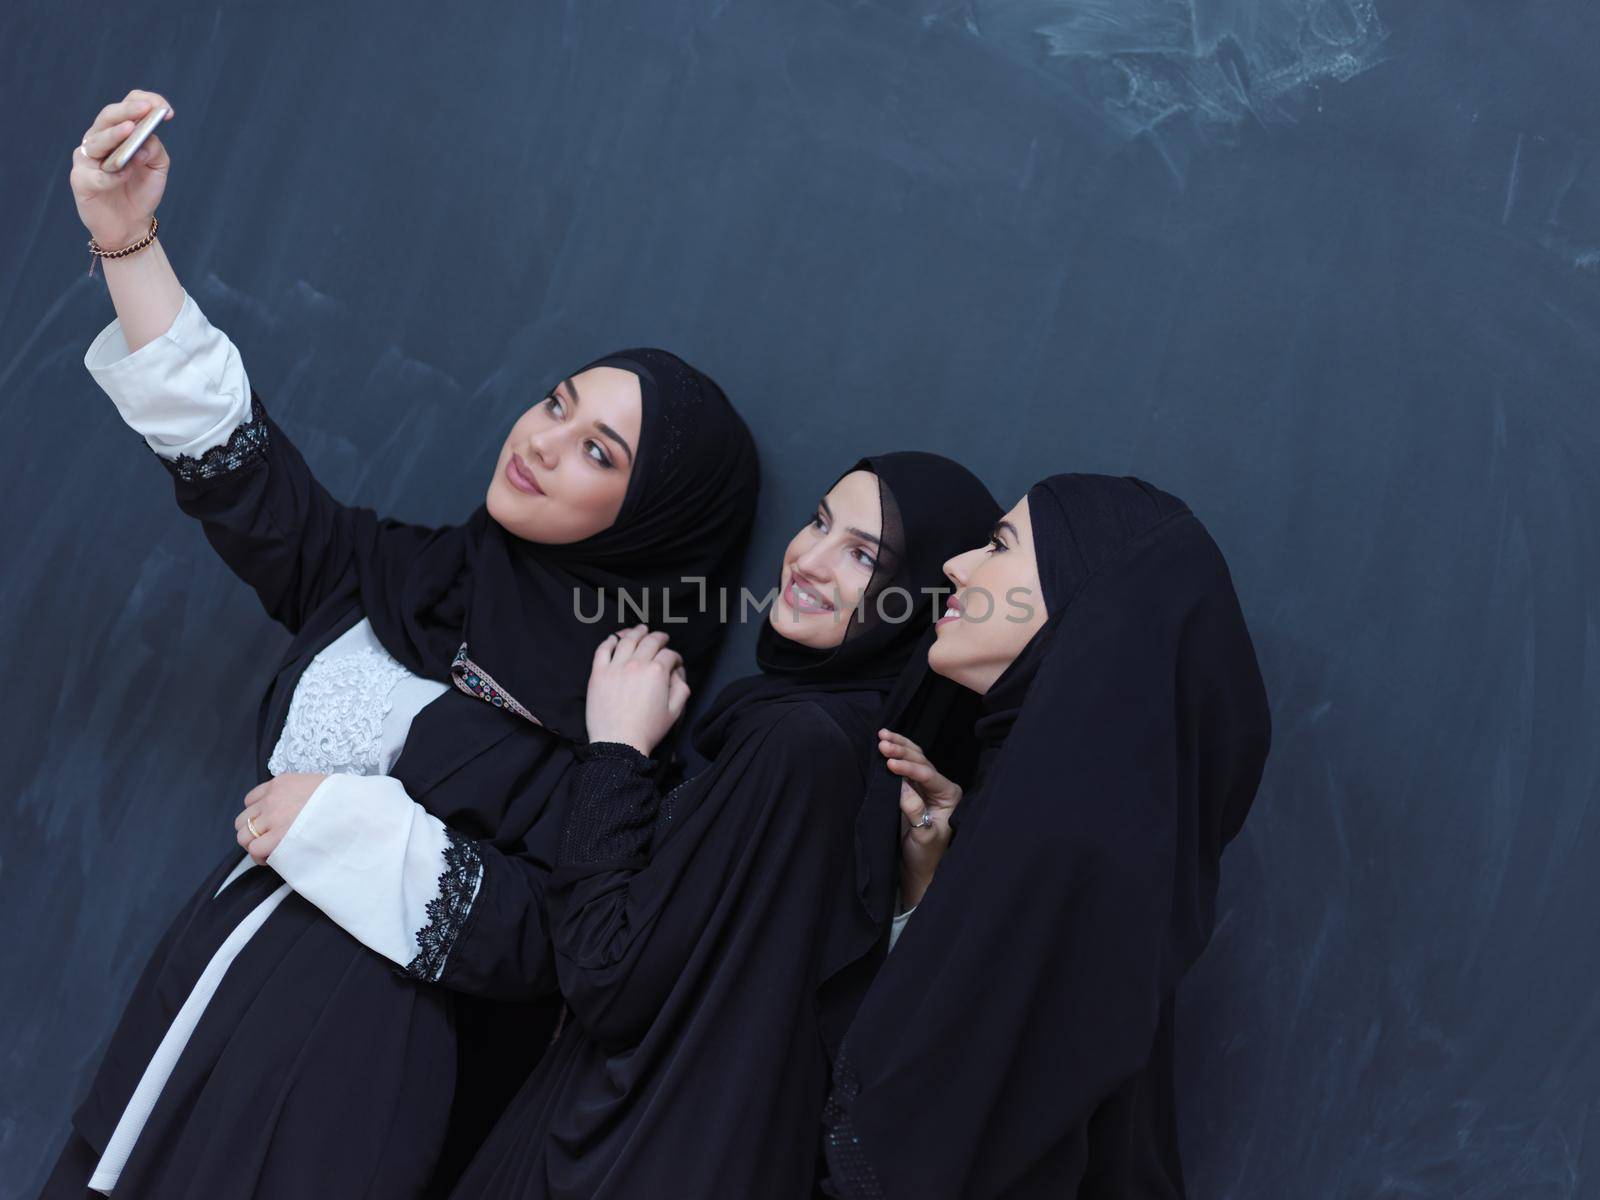 muslim women taking selfie picture in front of black chalkboard by dotshock